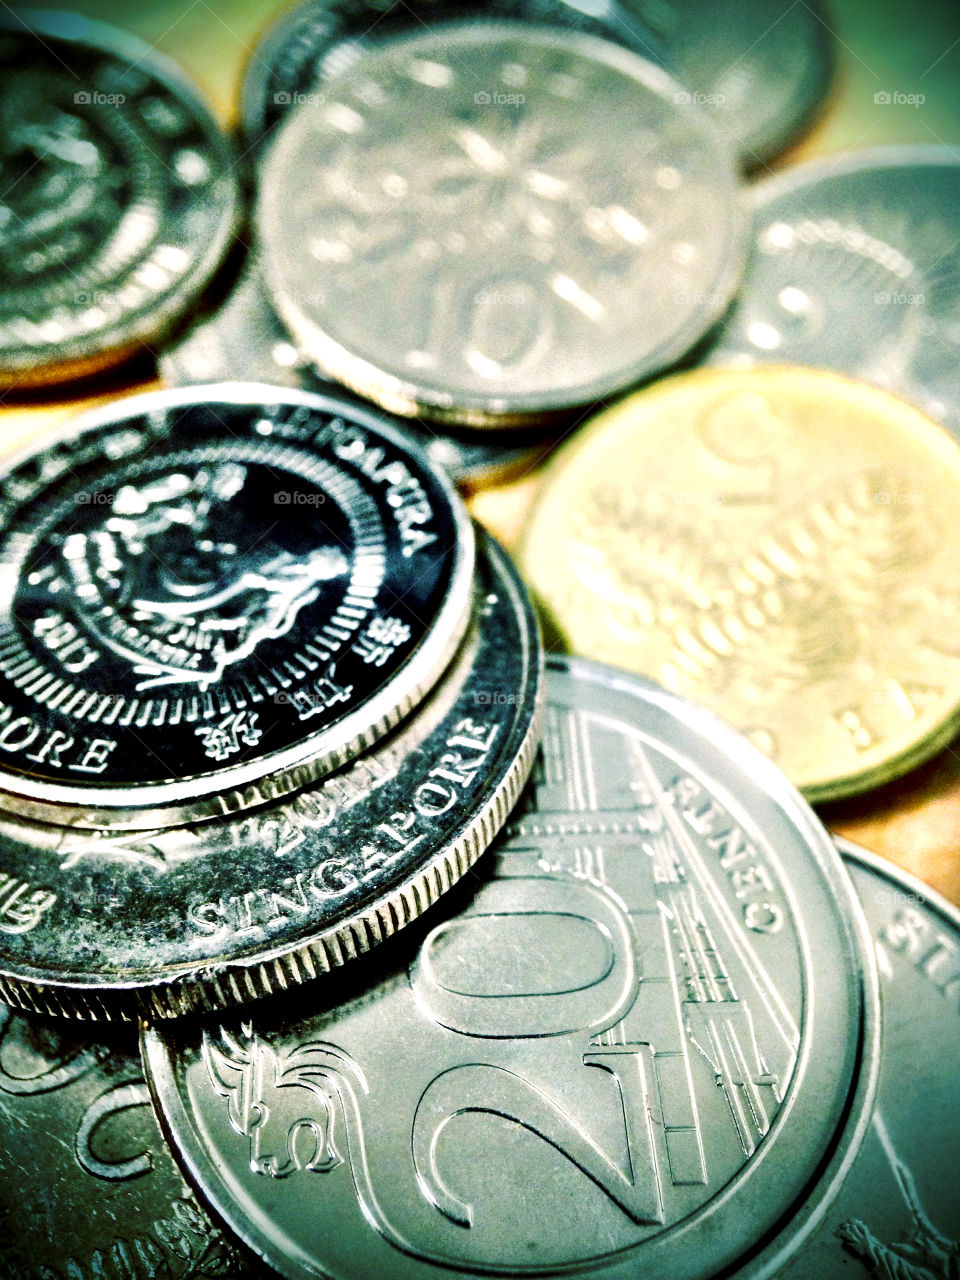 Closeup of singapore coins